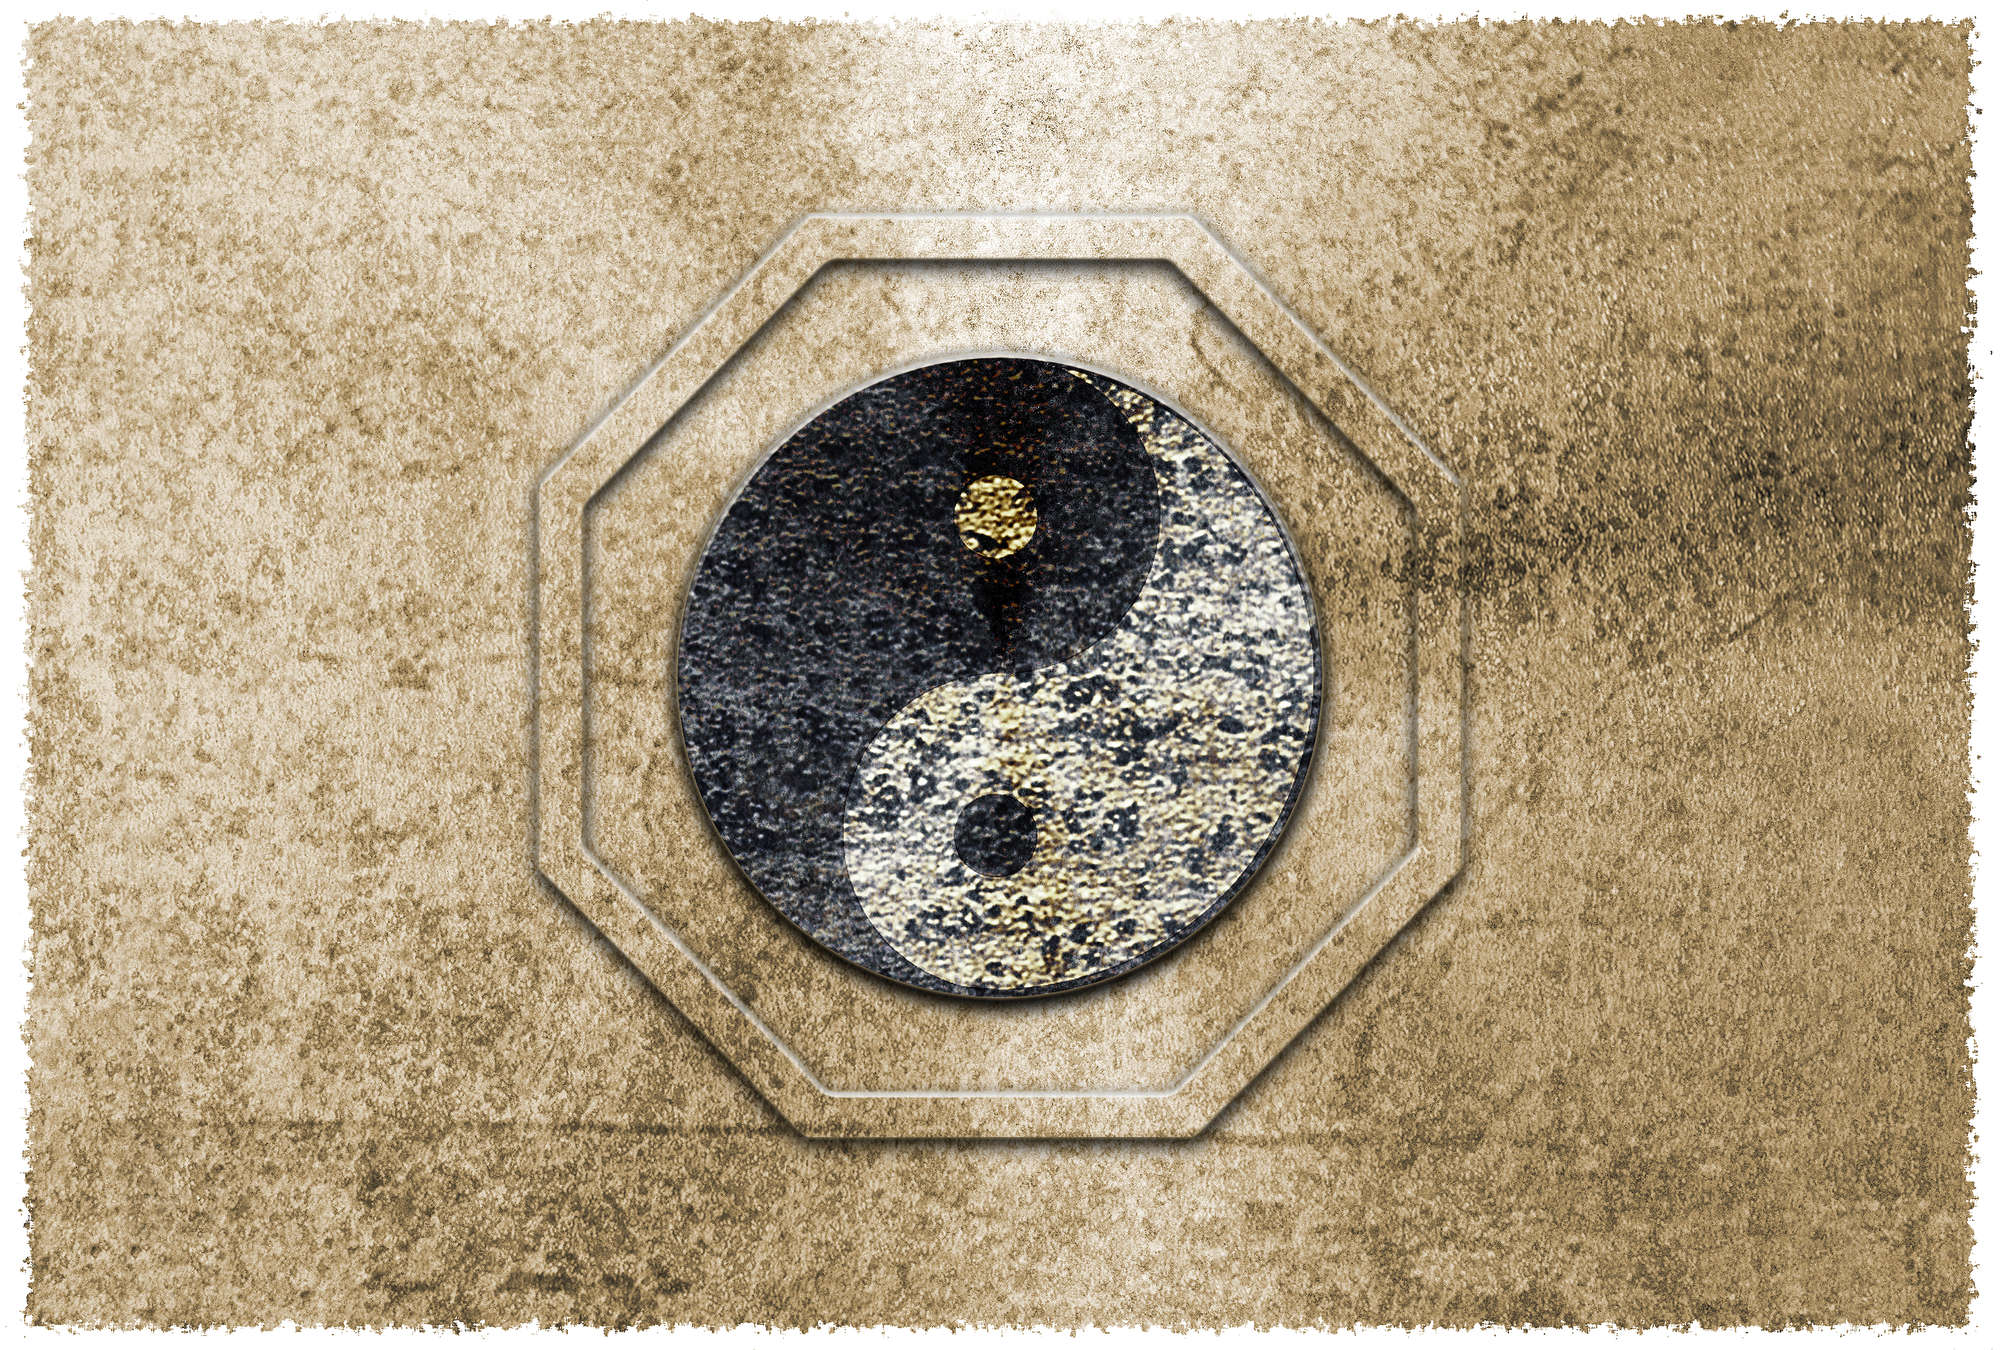             Papel pintado Yin&Yang, símbolo asiático y acento dorado - Marrón, negro, blanco
        